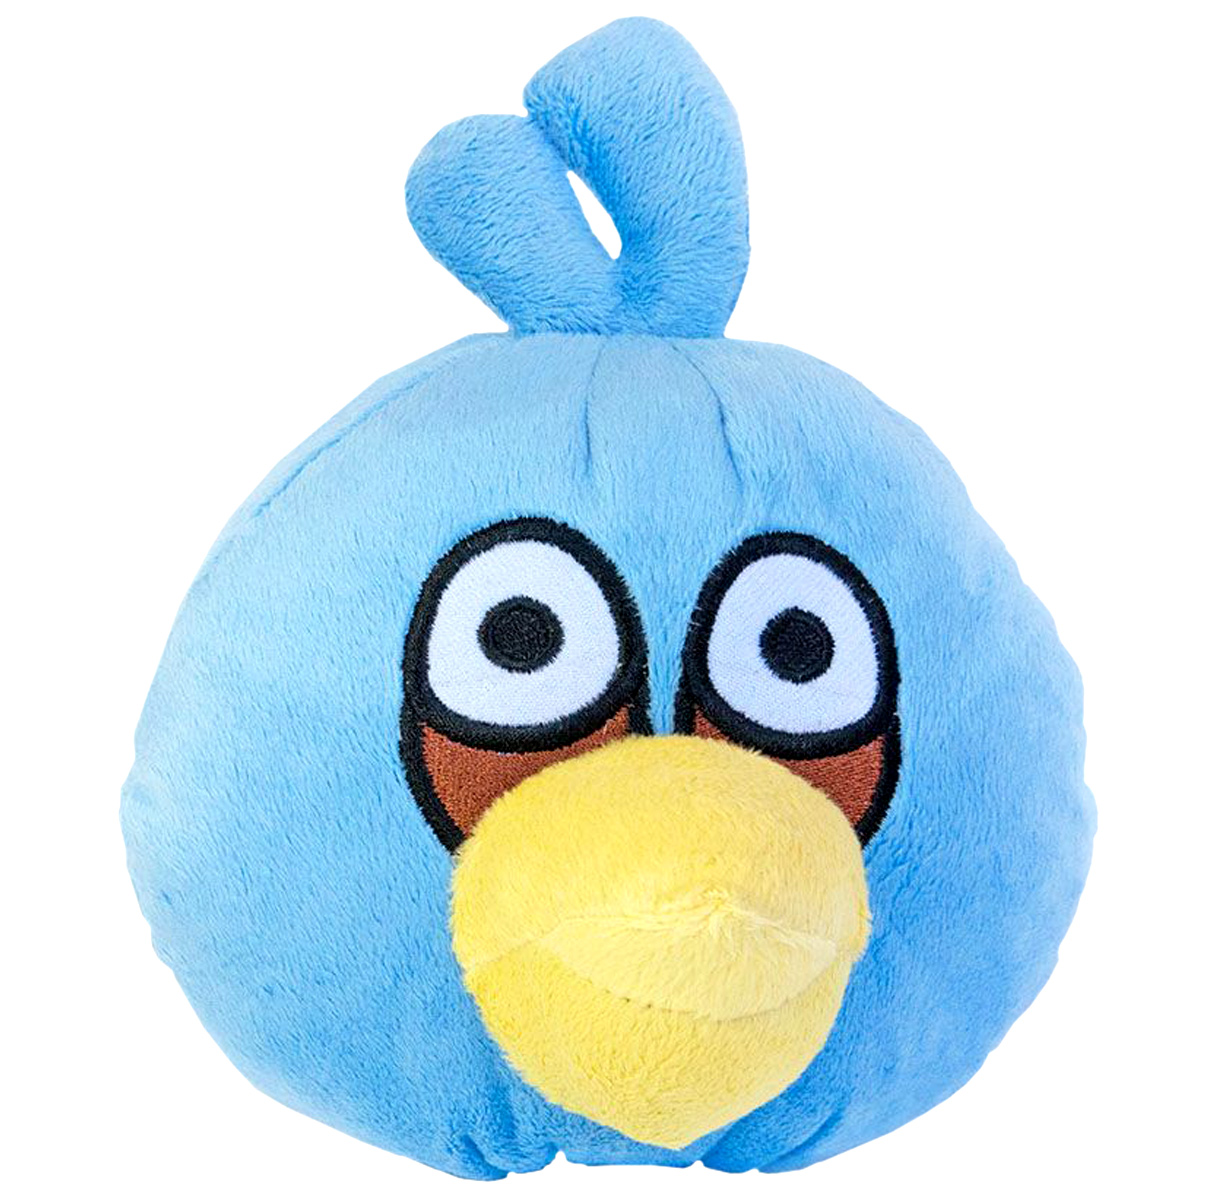 Мягкая игрушка 'Angry Birds' Джим  голубая средняя